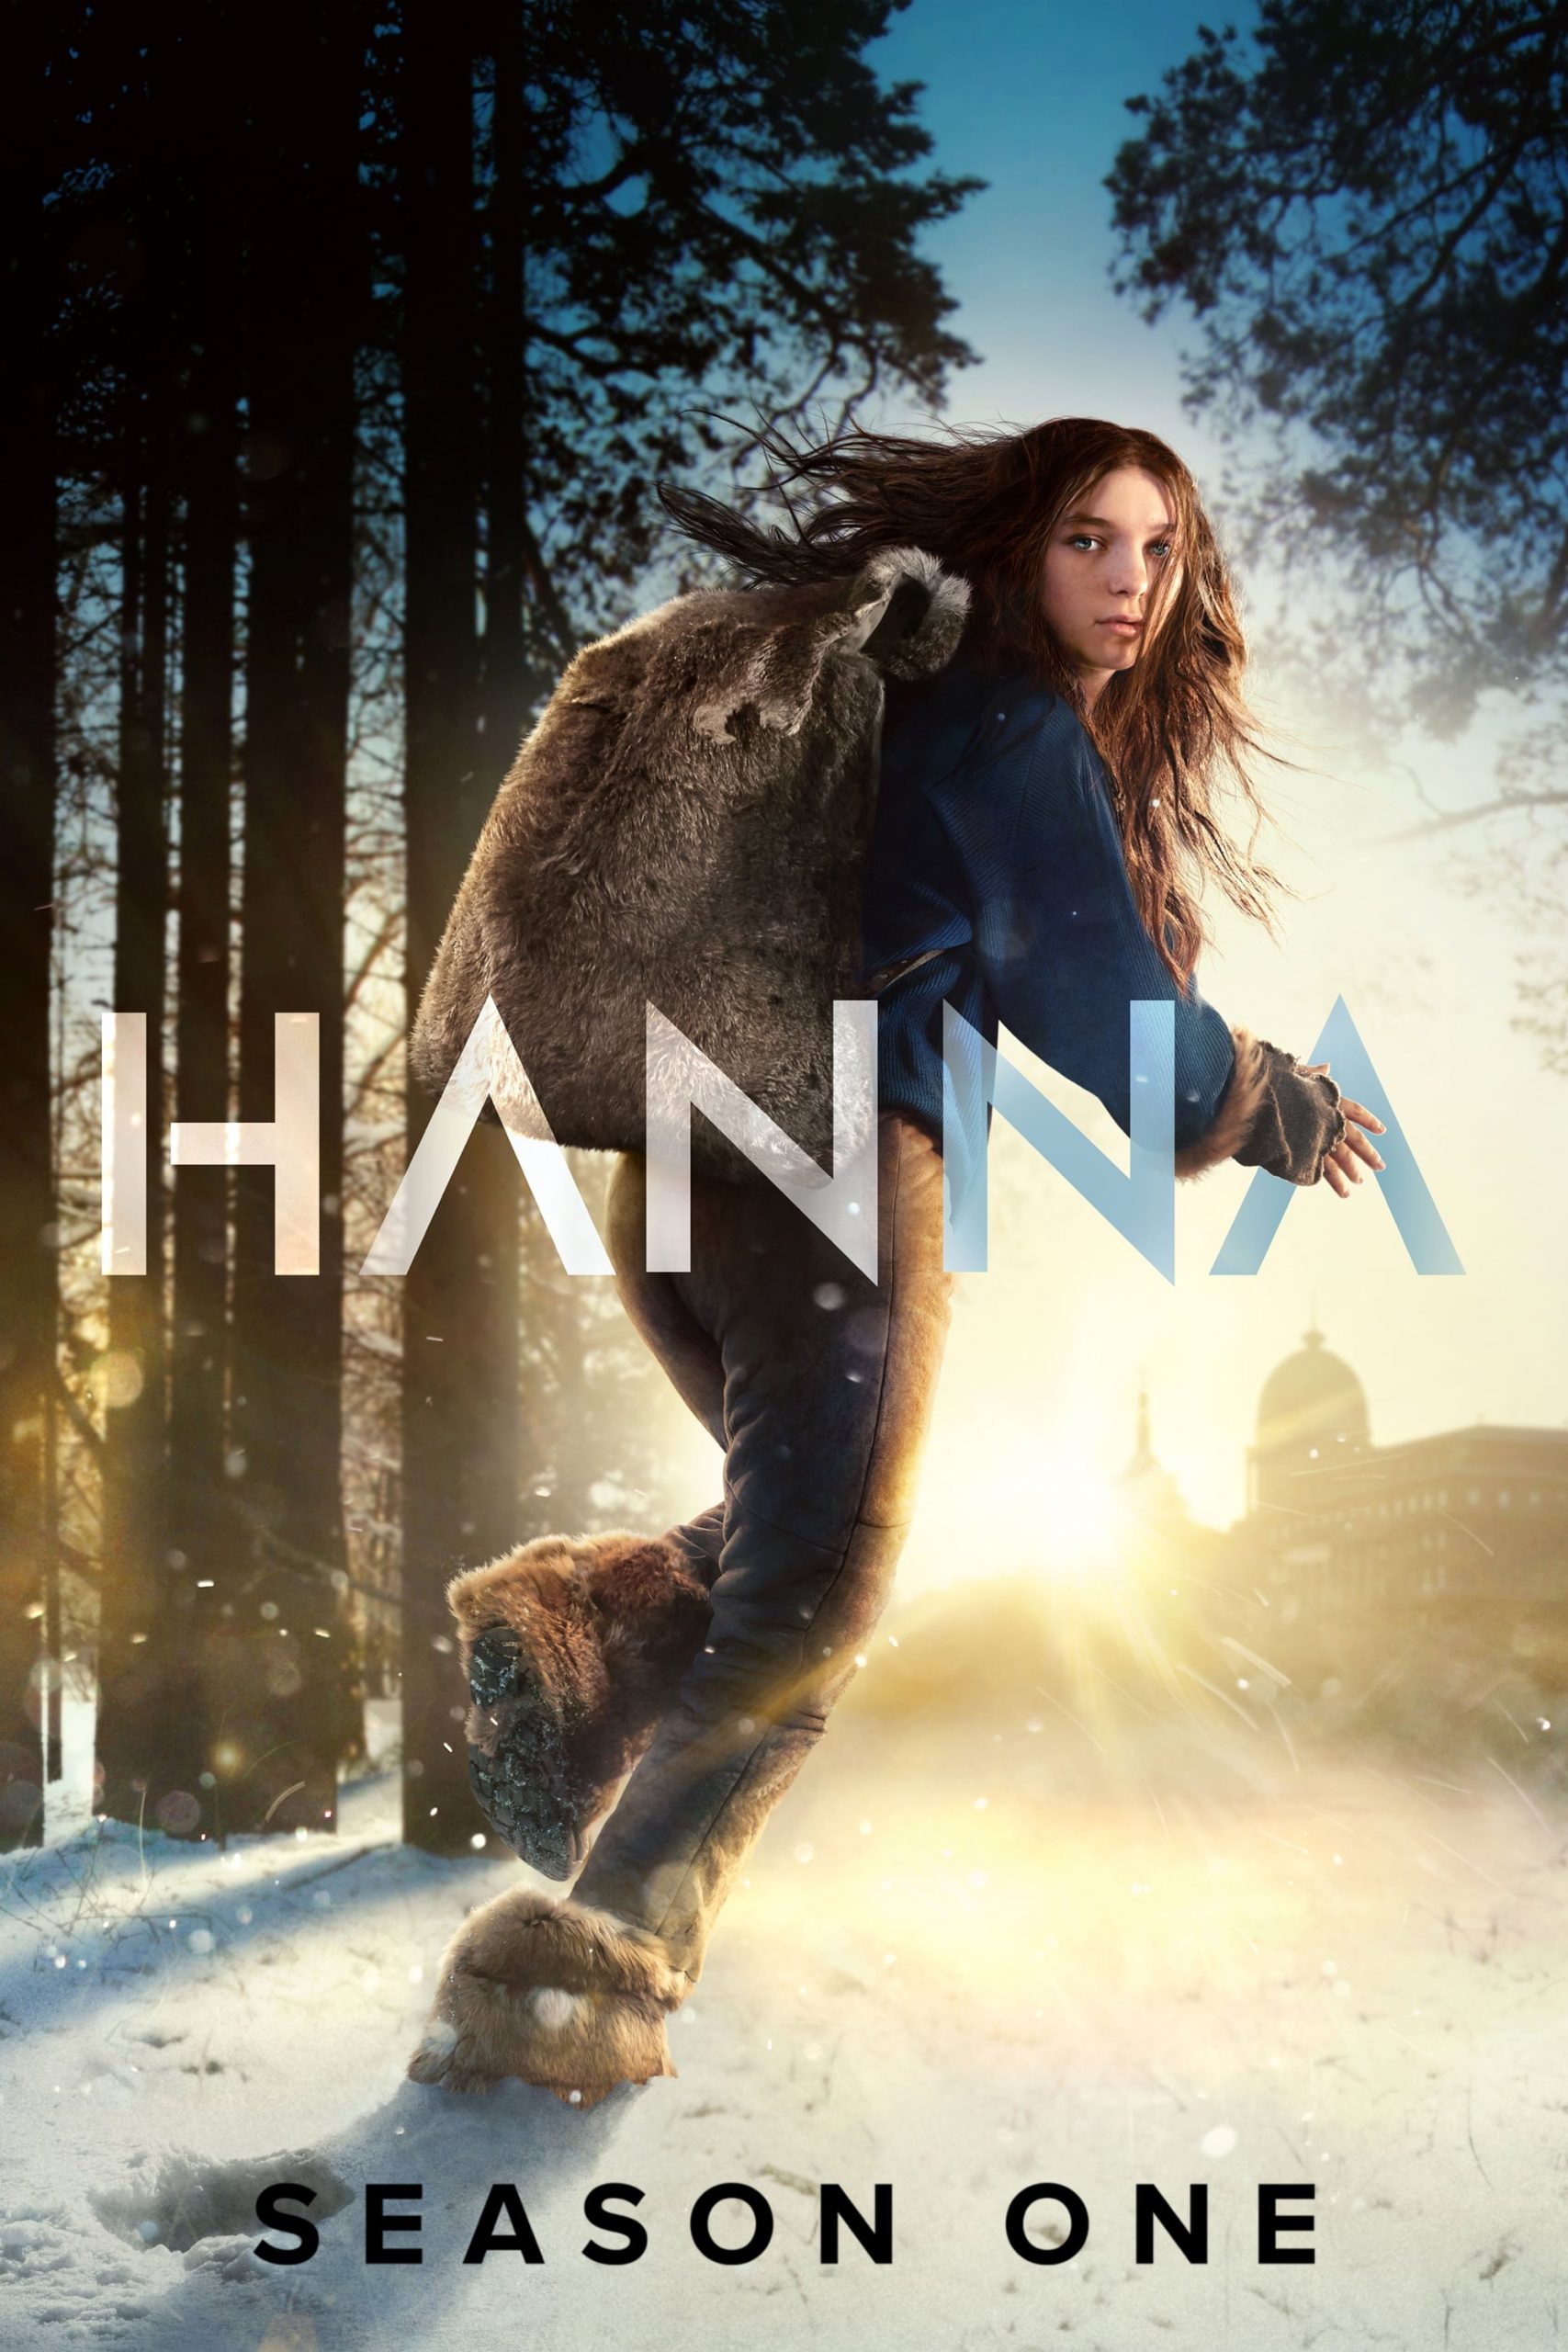 Hanna Season 1 (2019) ซับไทย ตอนที่ 1-8